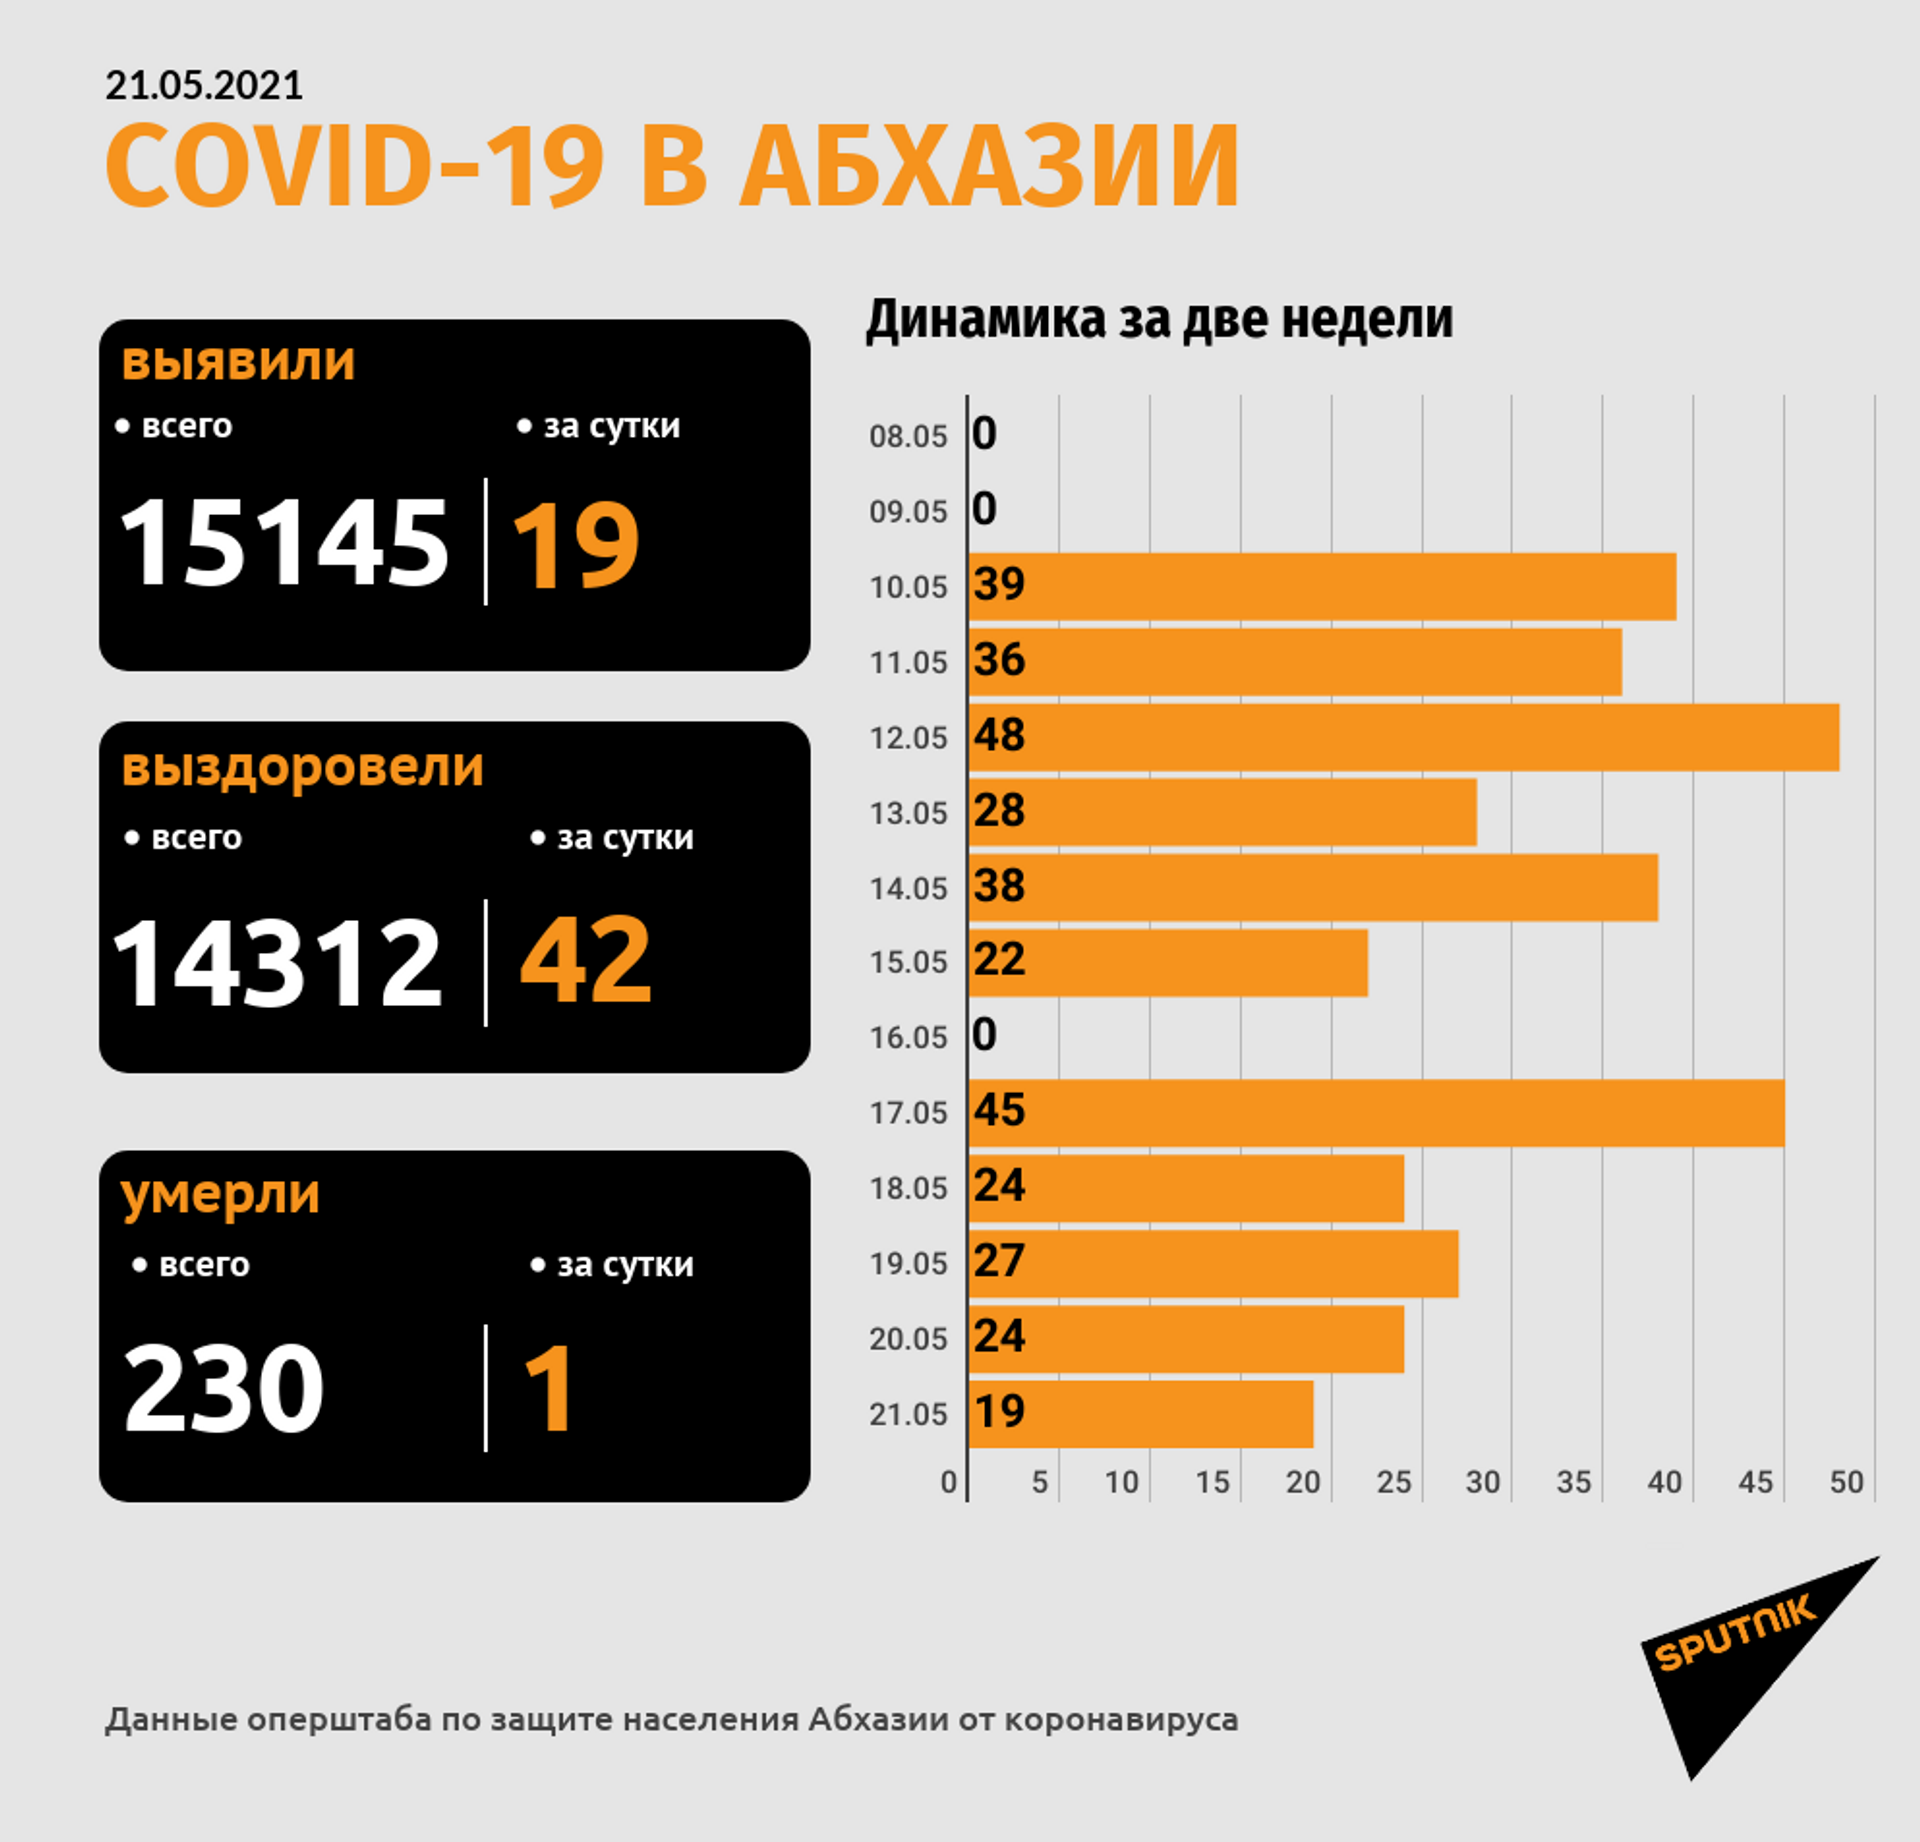 Число смертей от COVID-19 в Абхазии достигло 230 - Sputnik Абхазия, 1920, 21.05.2021